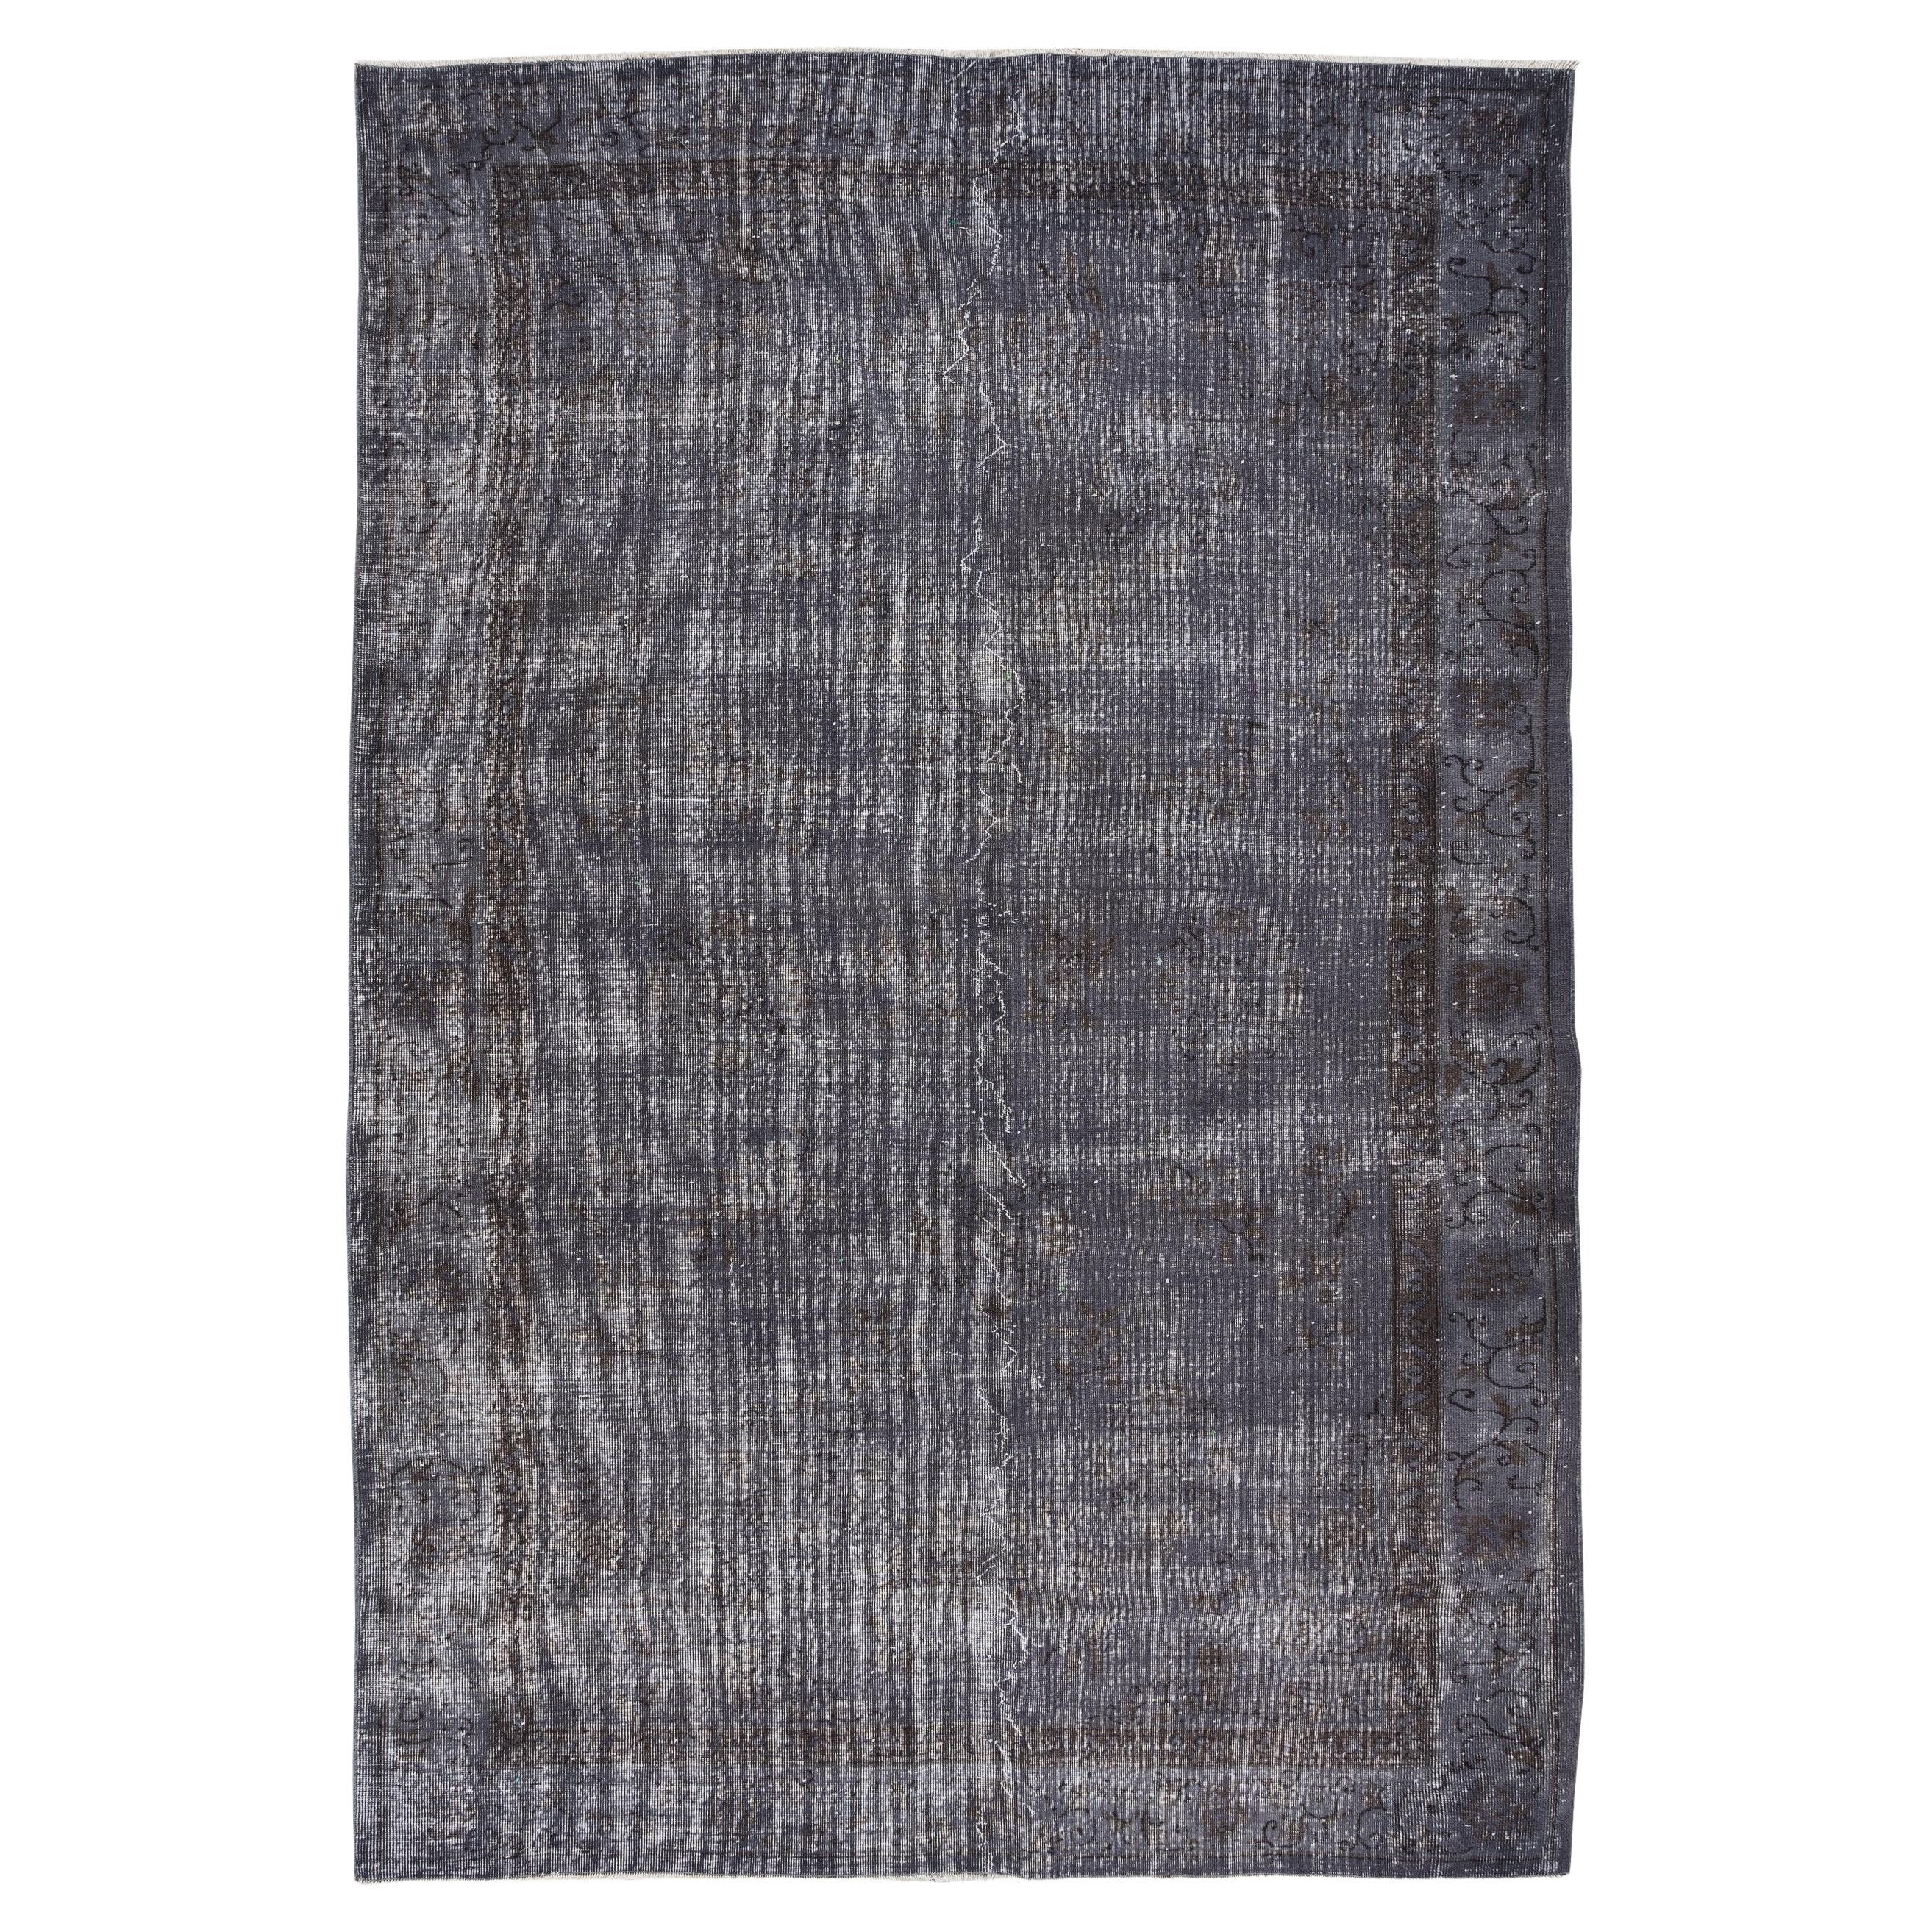 Tapis gris moderne 7x10.7 Ft, revêtement de sol en laine, tapis turc fait à la main des années 1960